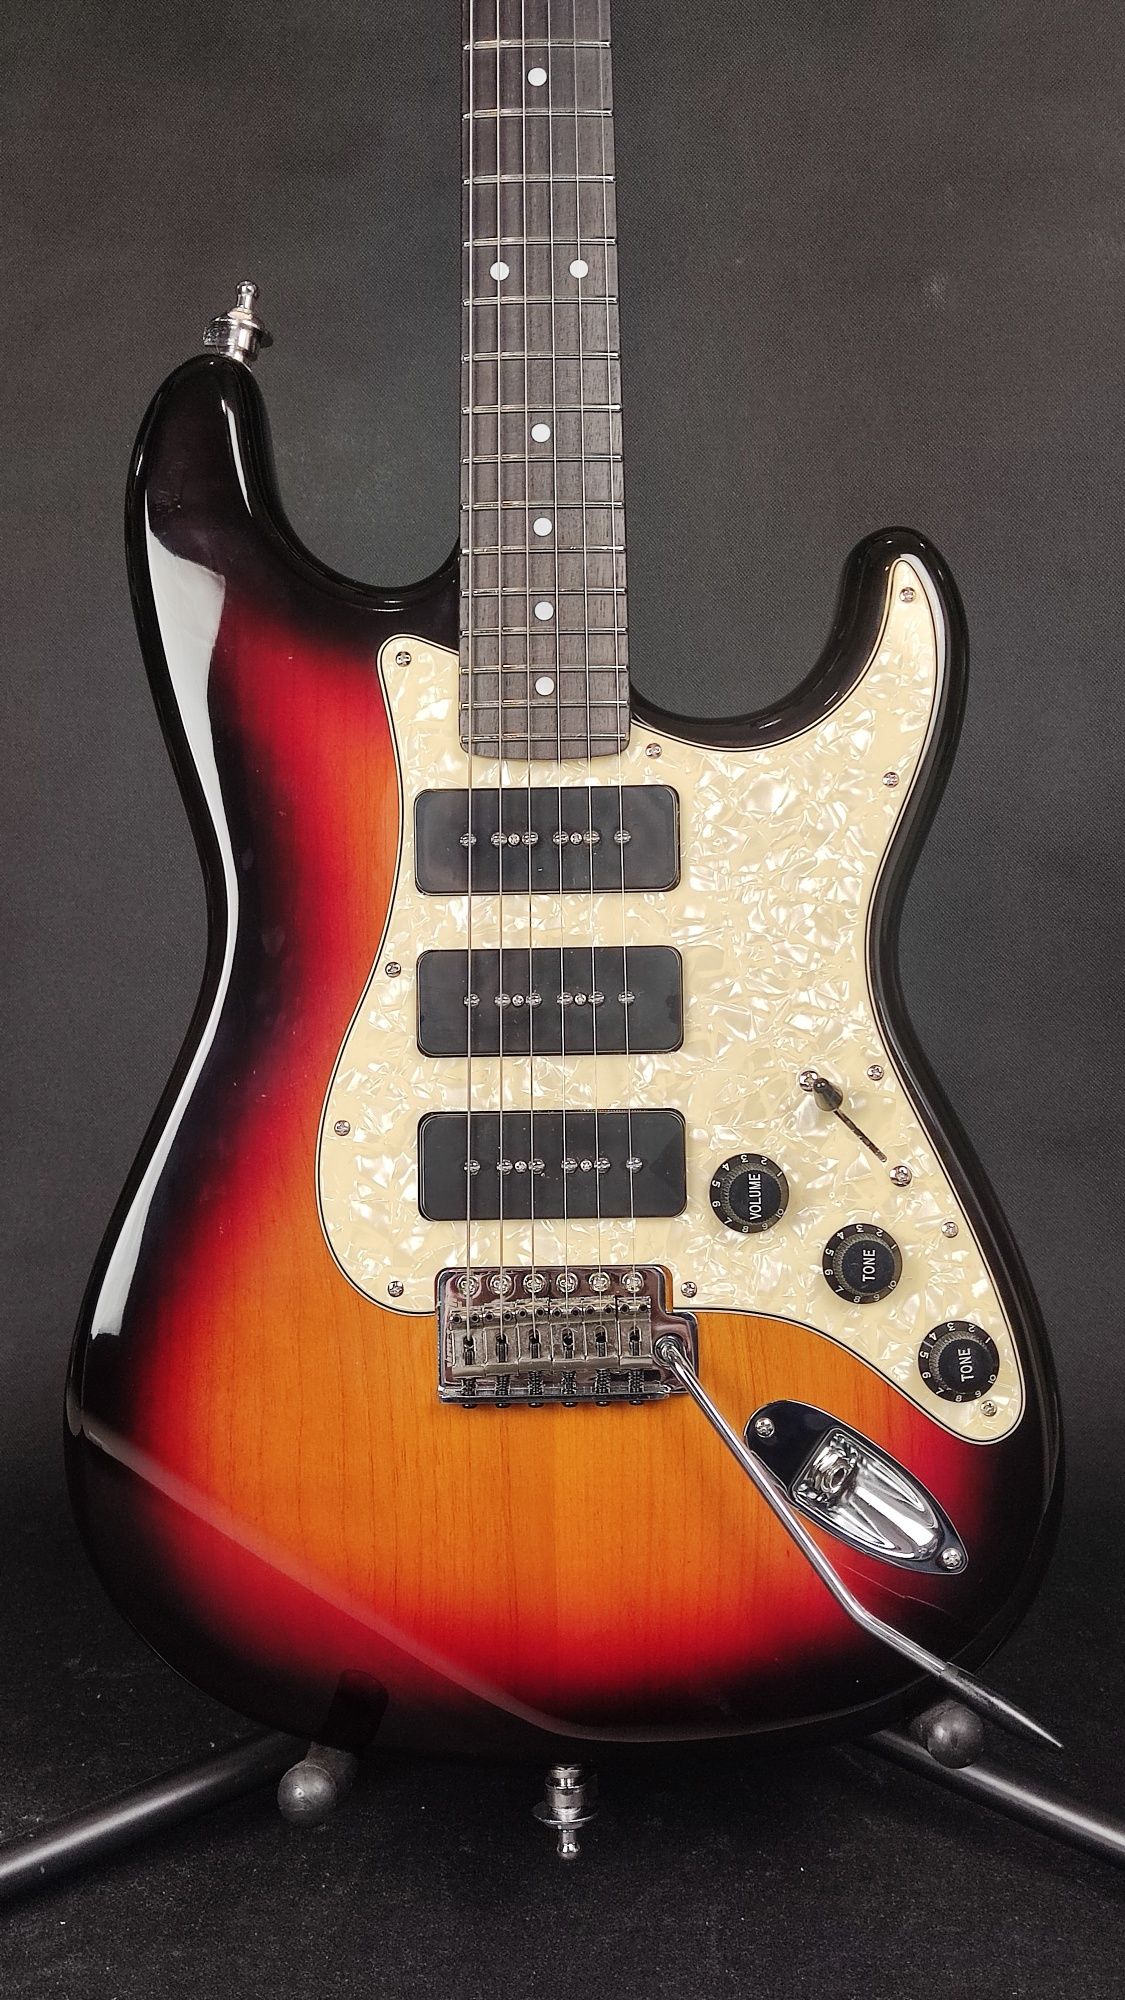 Gitara PZI Costom P90 Stratocaster lutnicza